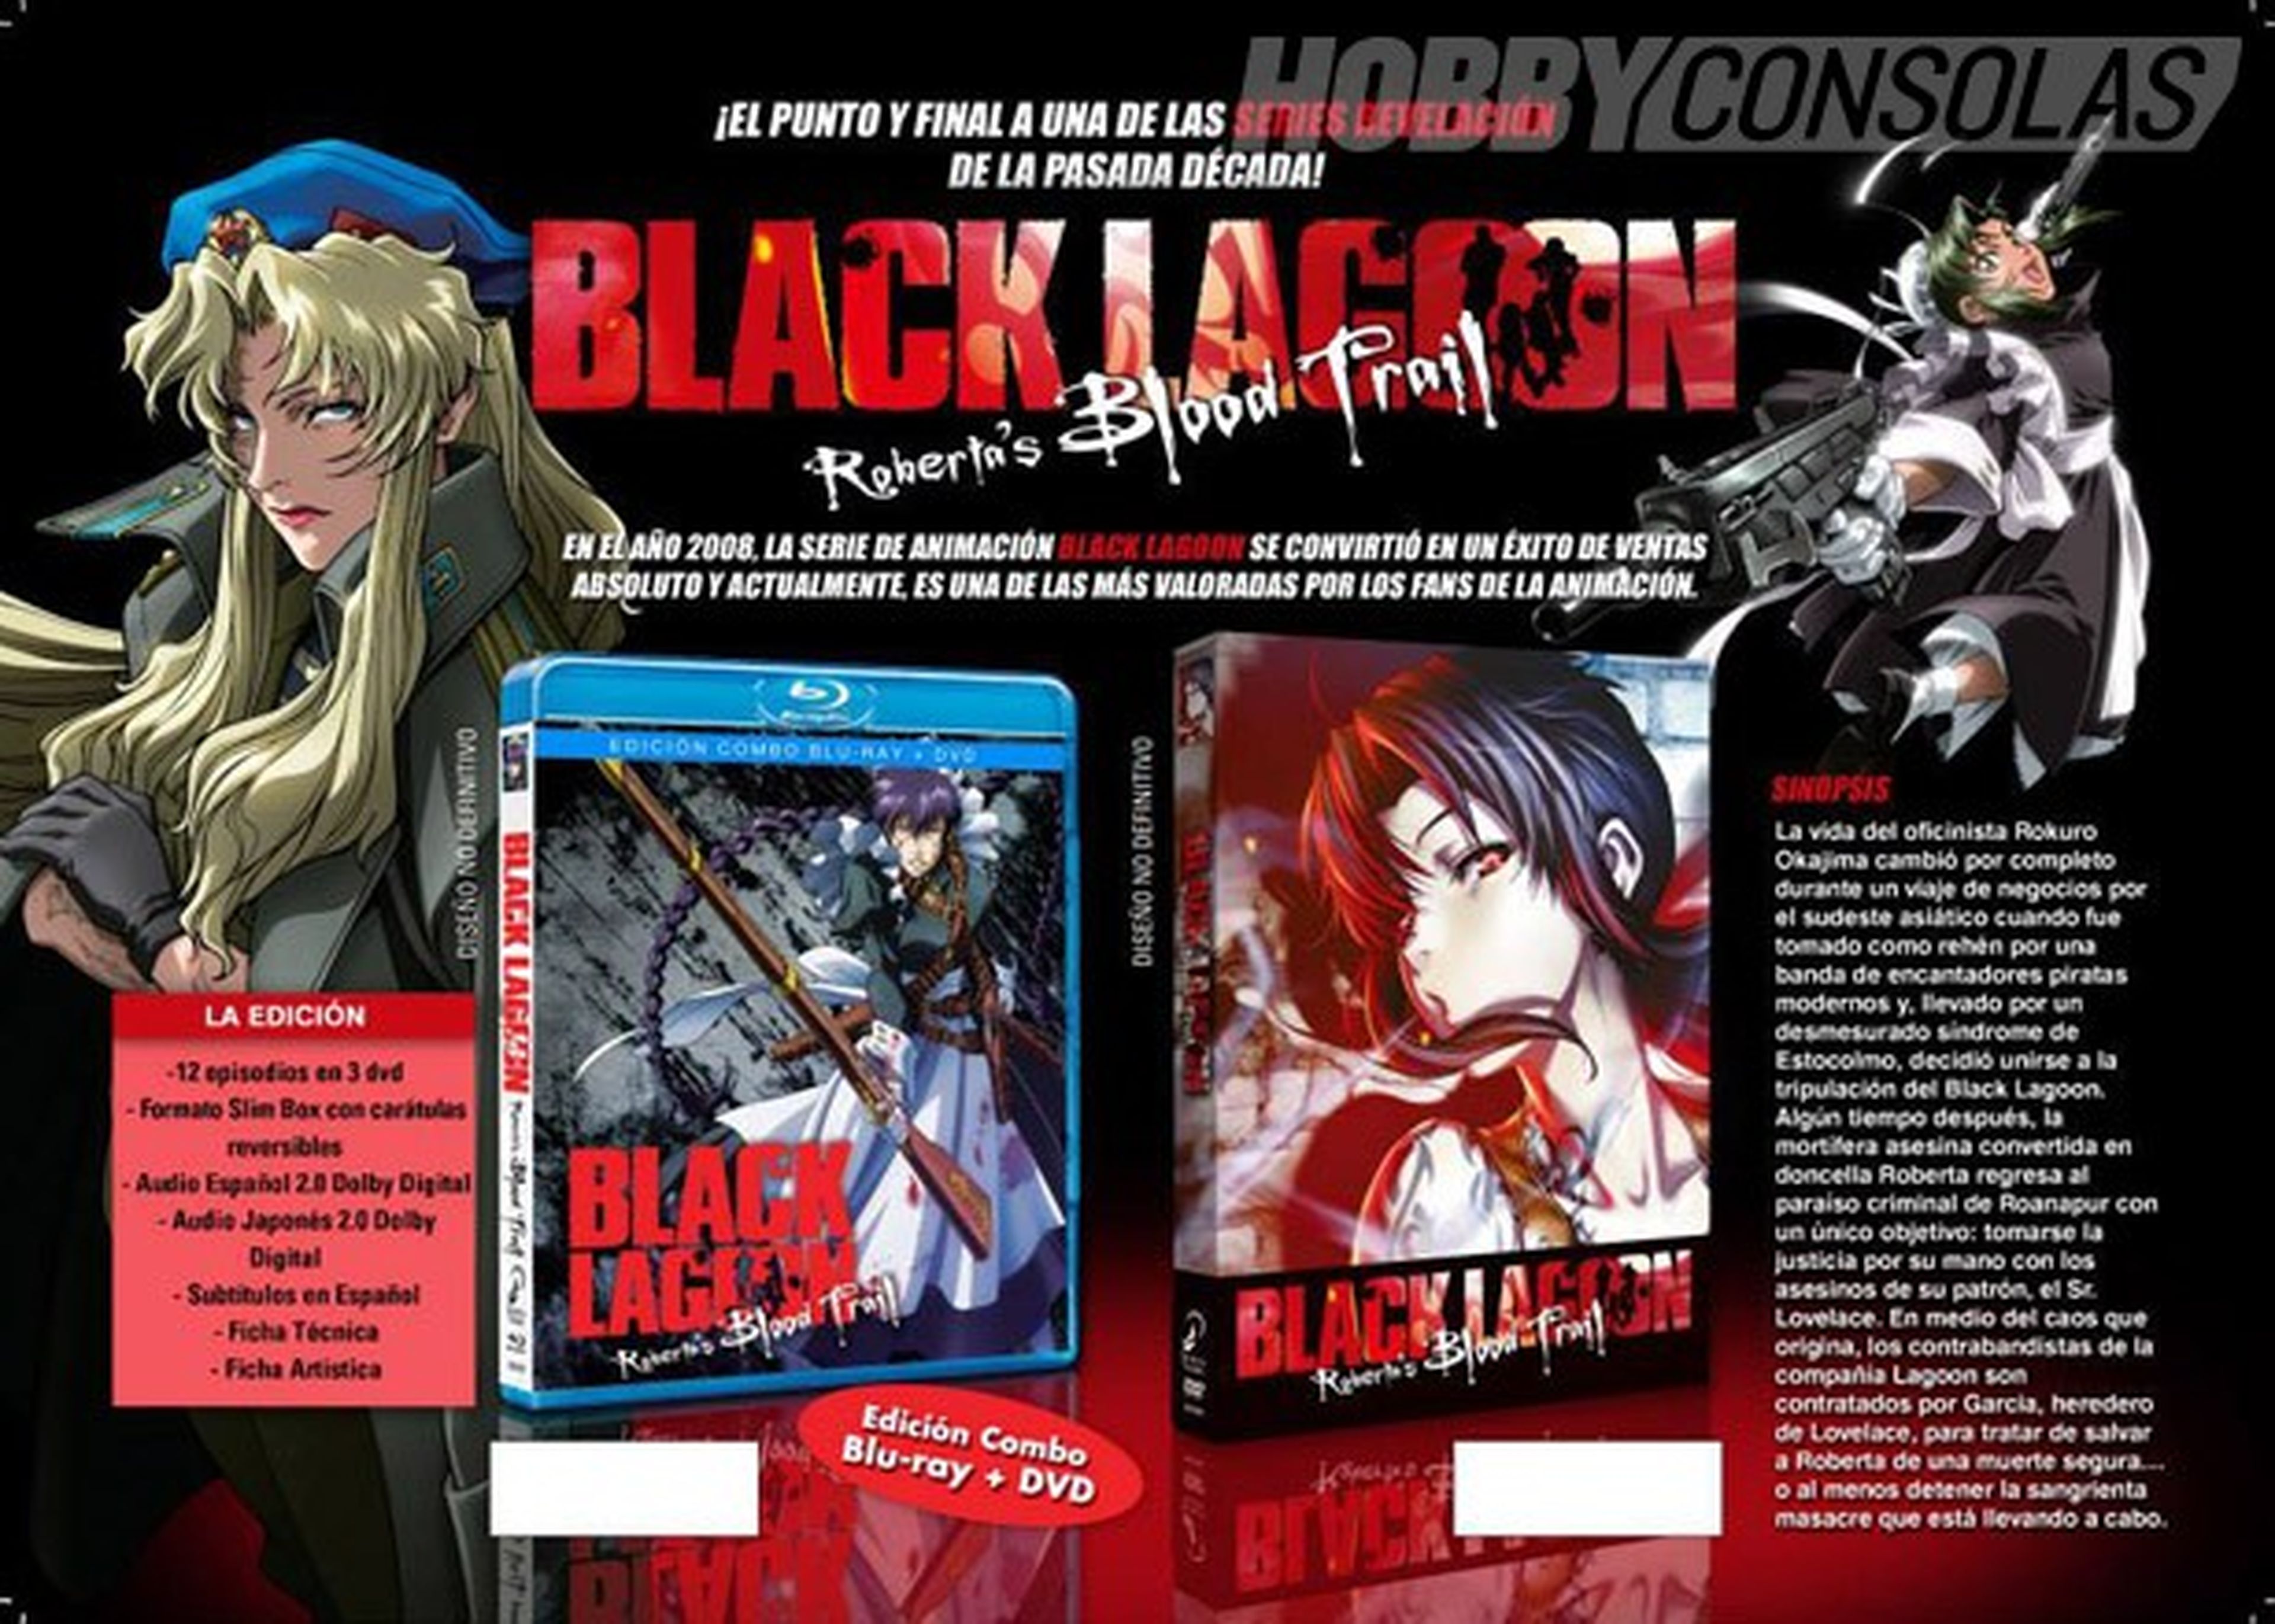 Edición española de las OVA's de Black Lagoon